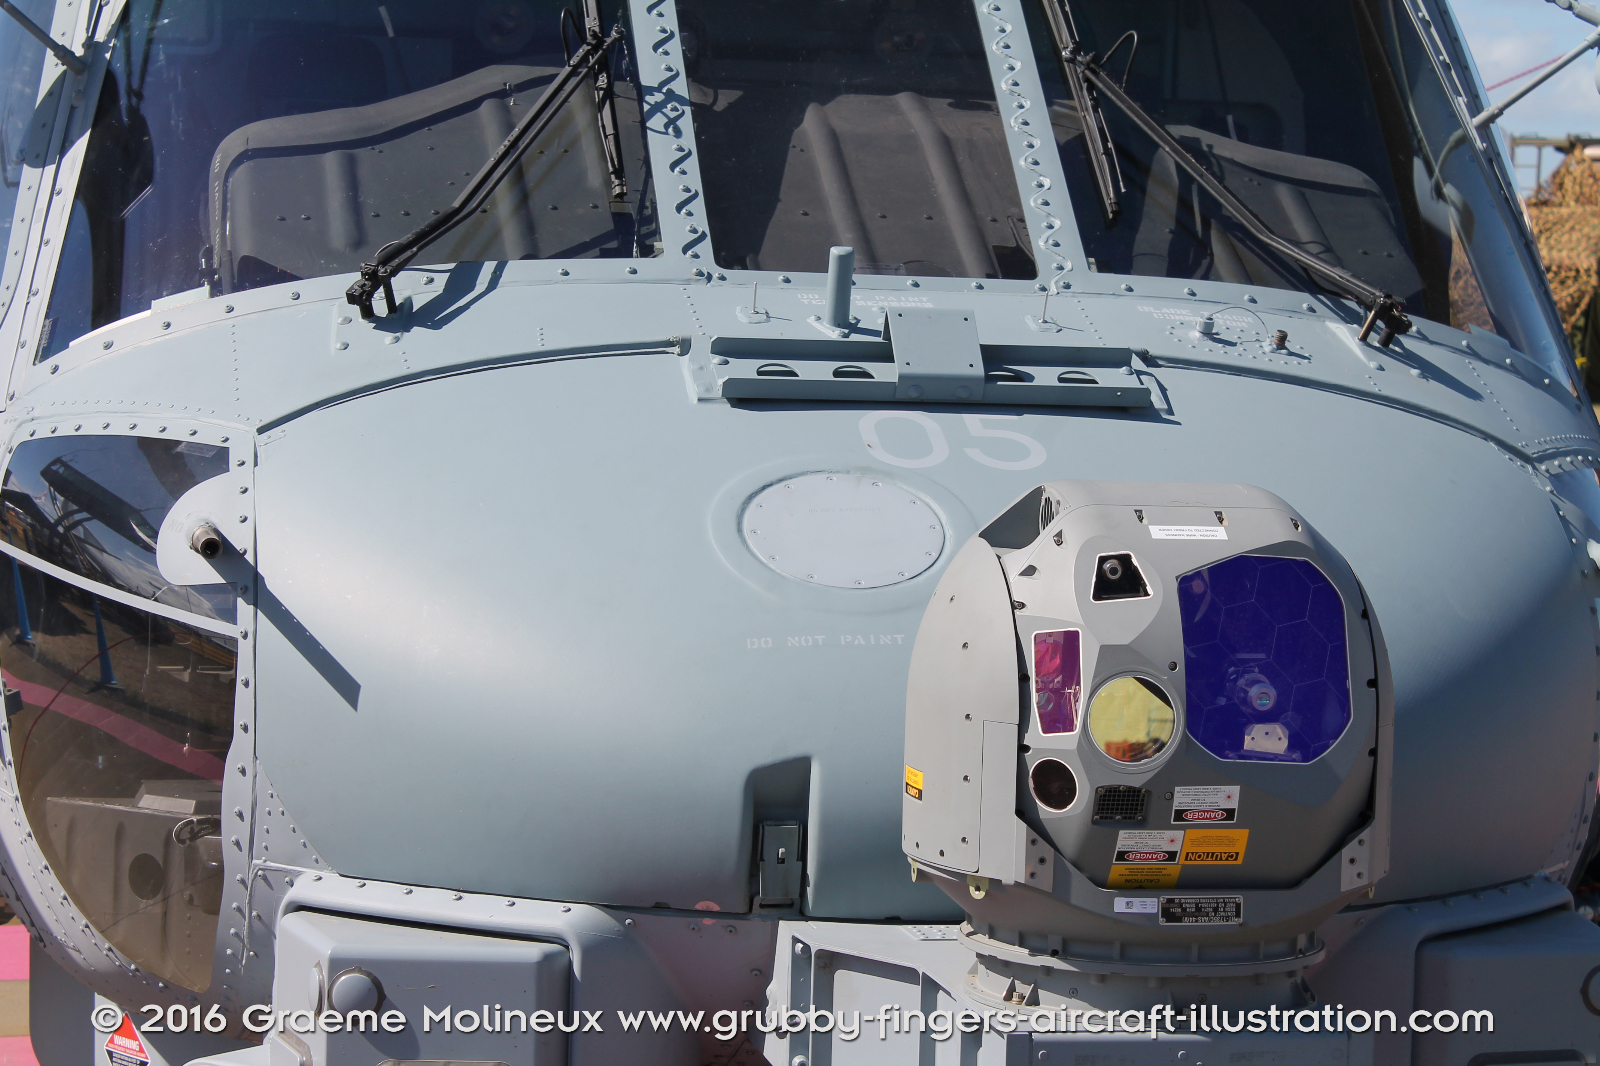 SIKORSKY_MH-60R_Seahawk_N48-005_Avalon_2015_14_GrubbyFingers